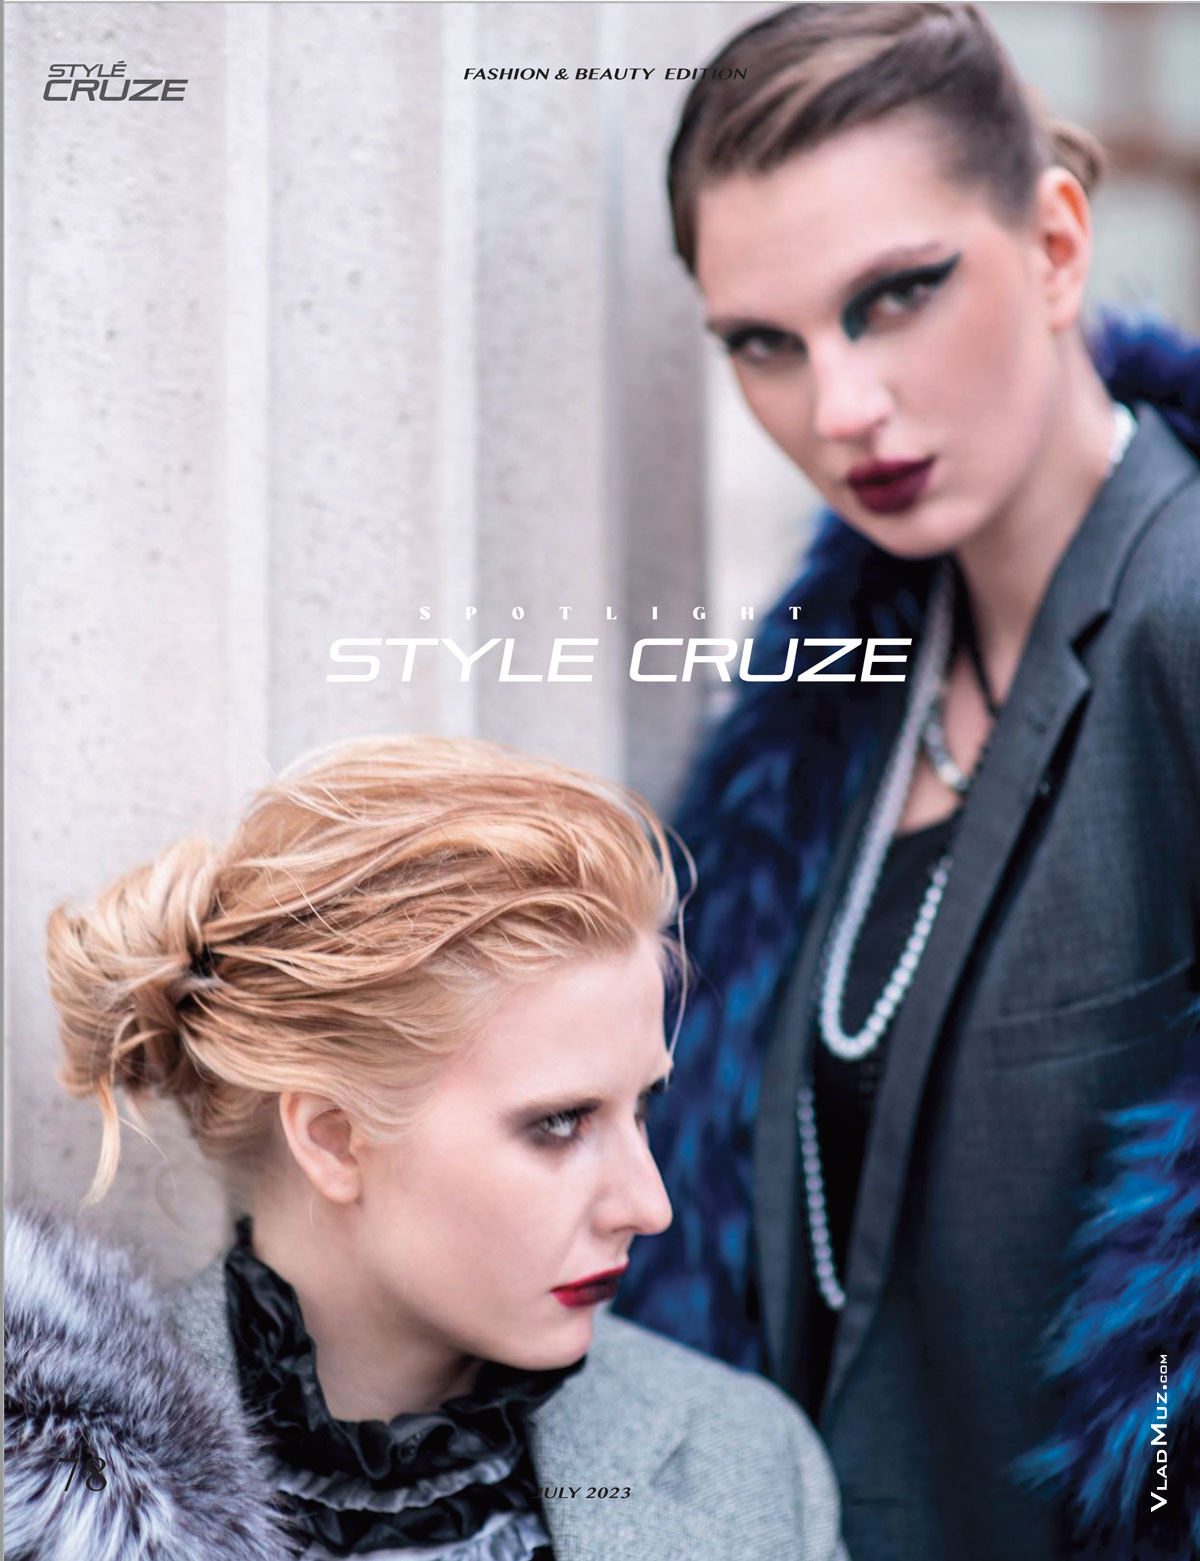 Фотопортрет 2-х девушек-моделей из серии модных фотографий для журнала Style Cruze Magazine